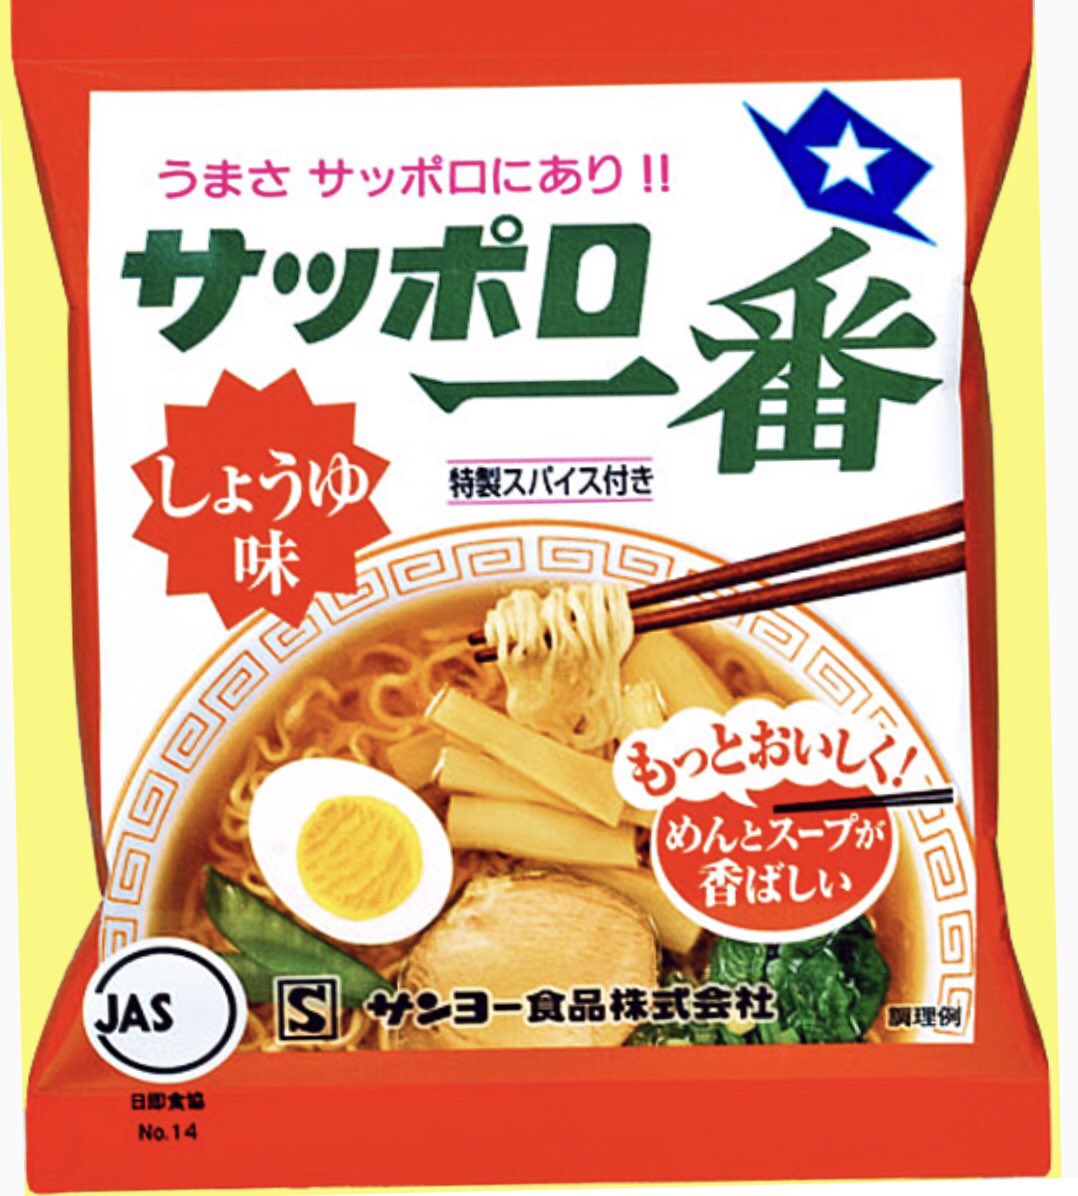 Острый оригинальный Японский рамэн Sapporo most soy sauce